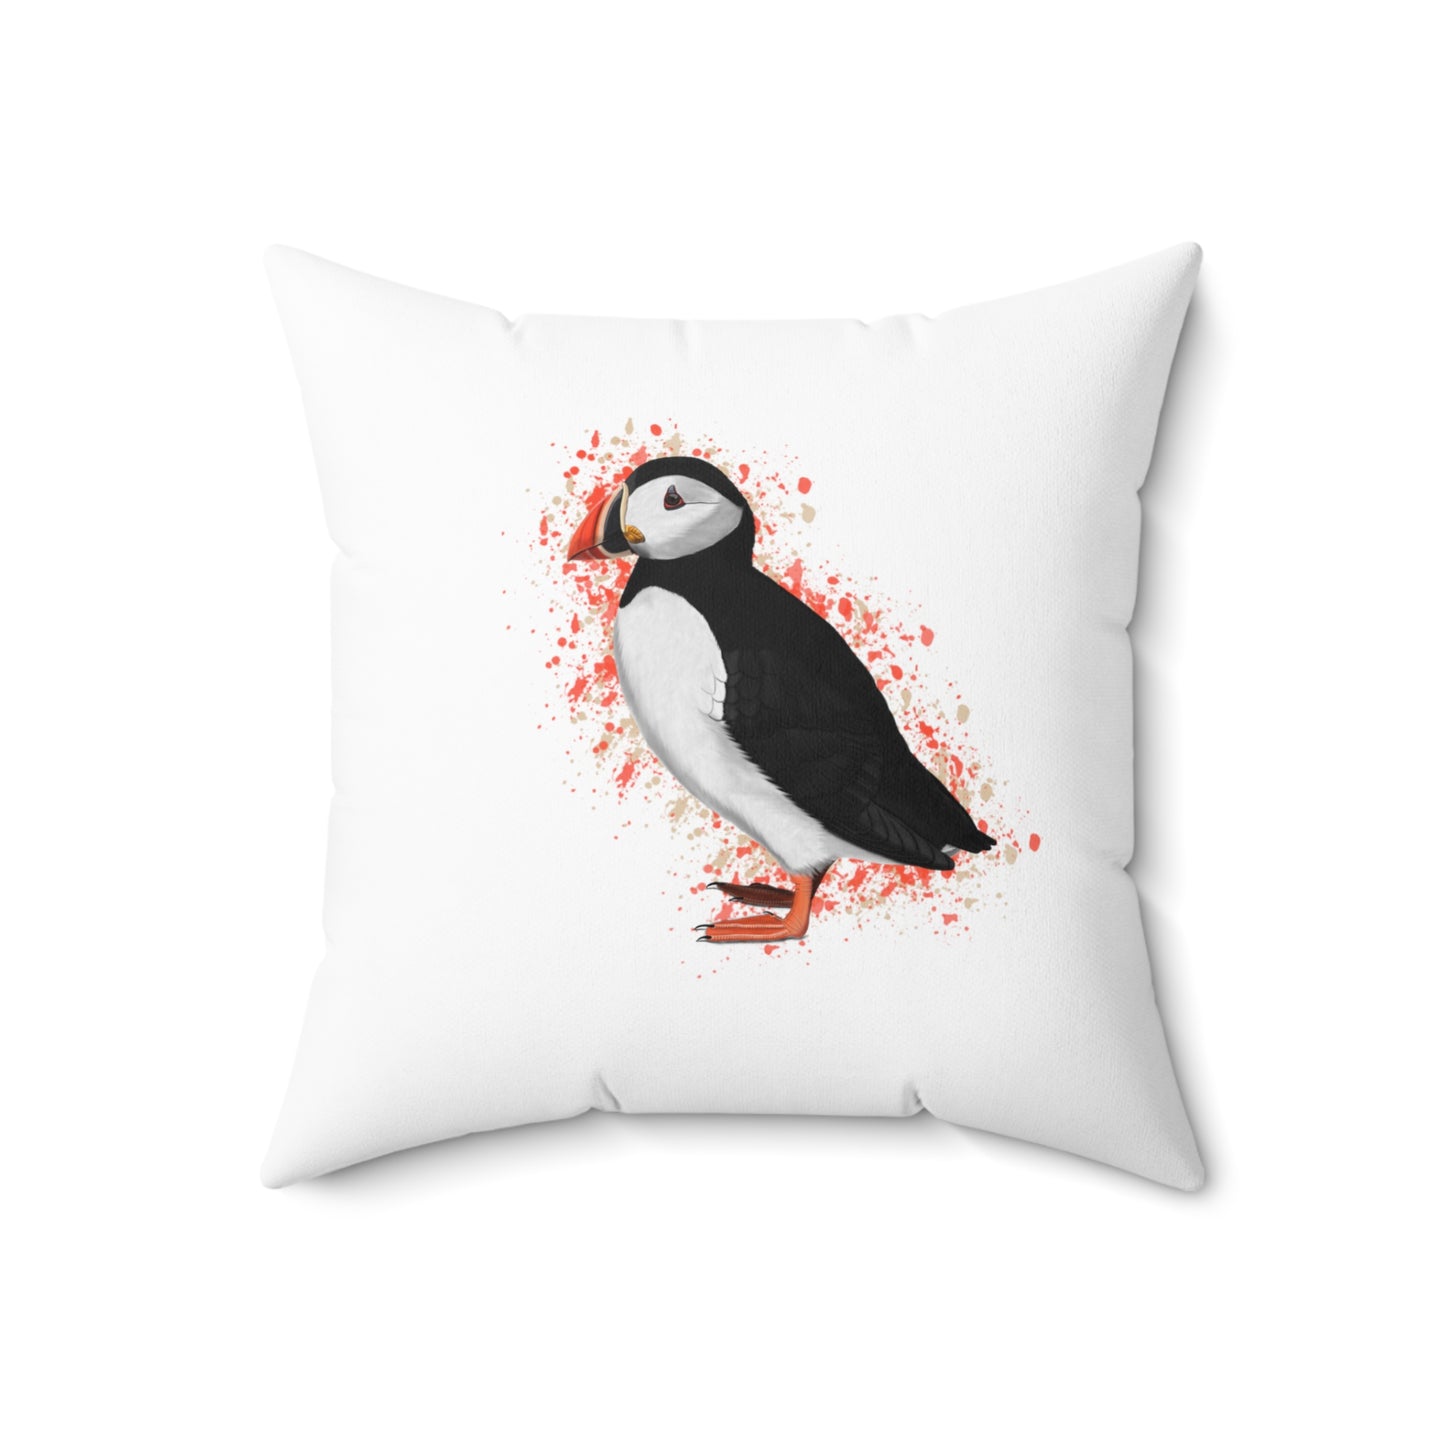 Puffin Bird Throw Pillow 16"x16" White